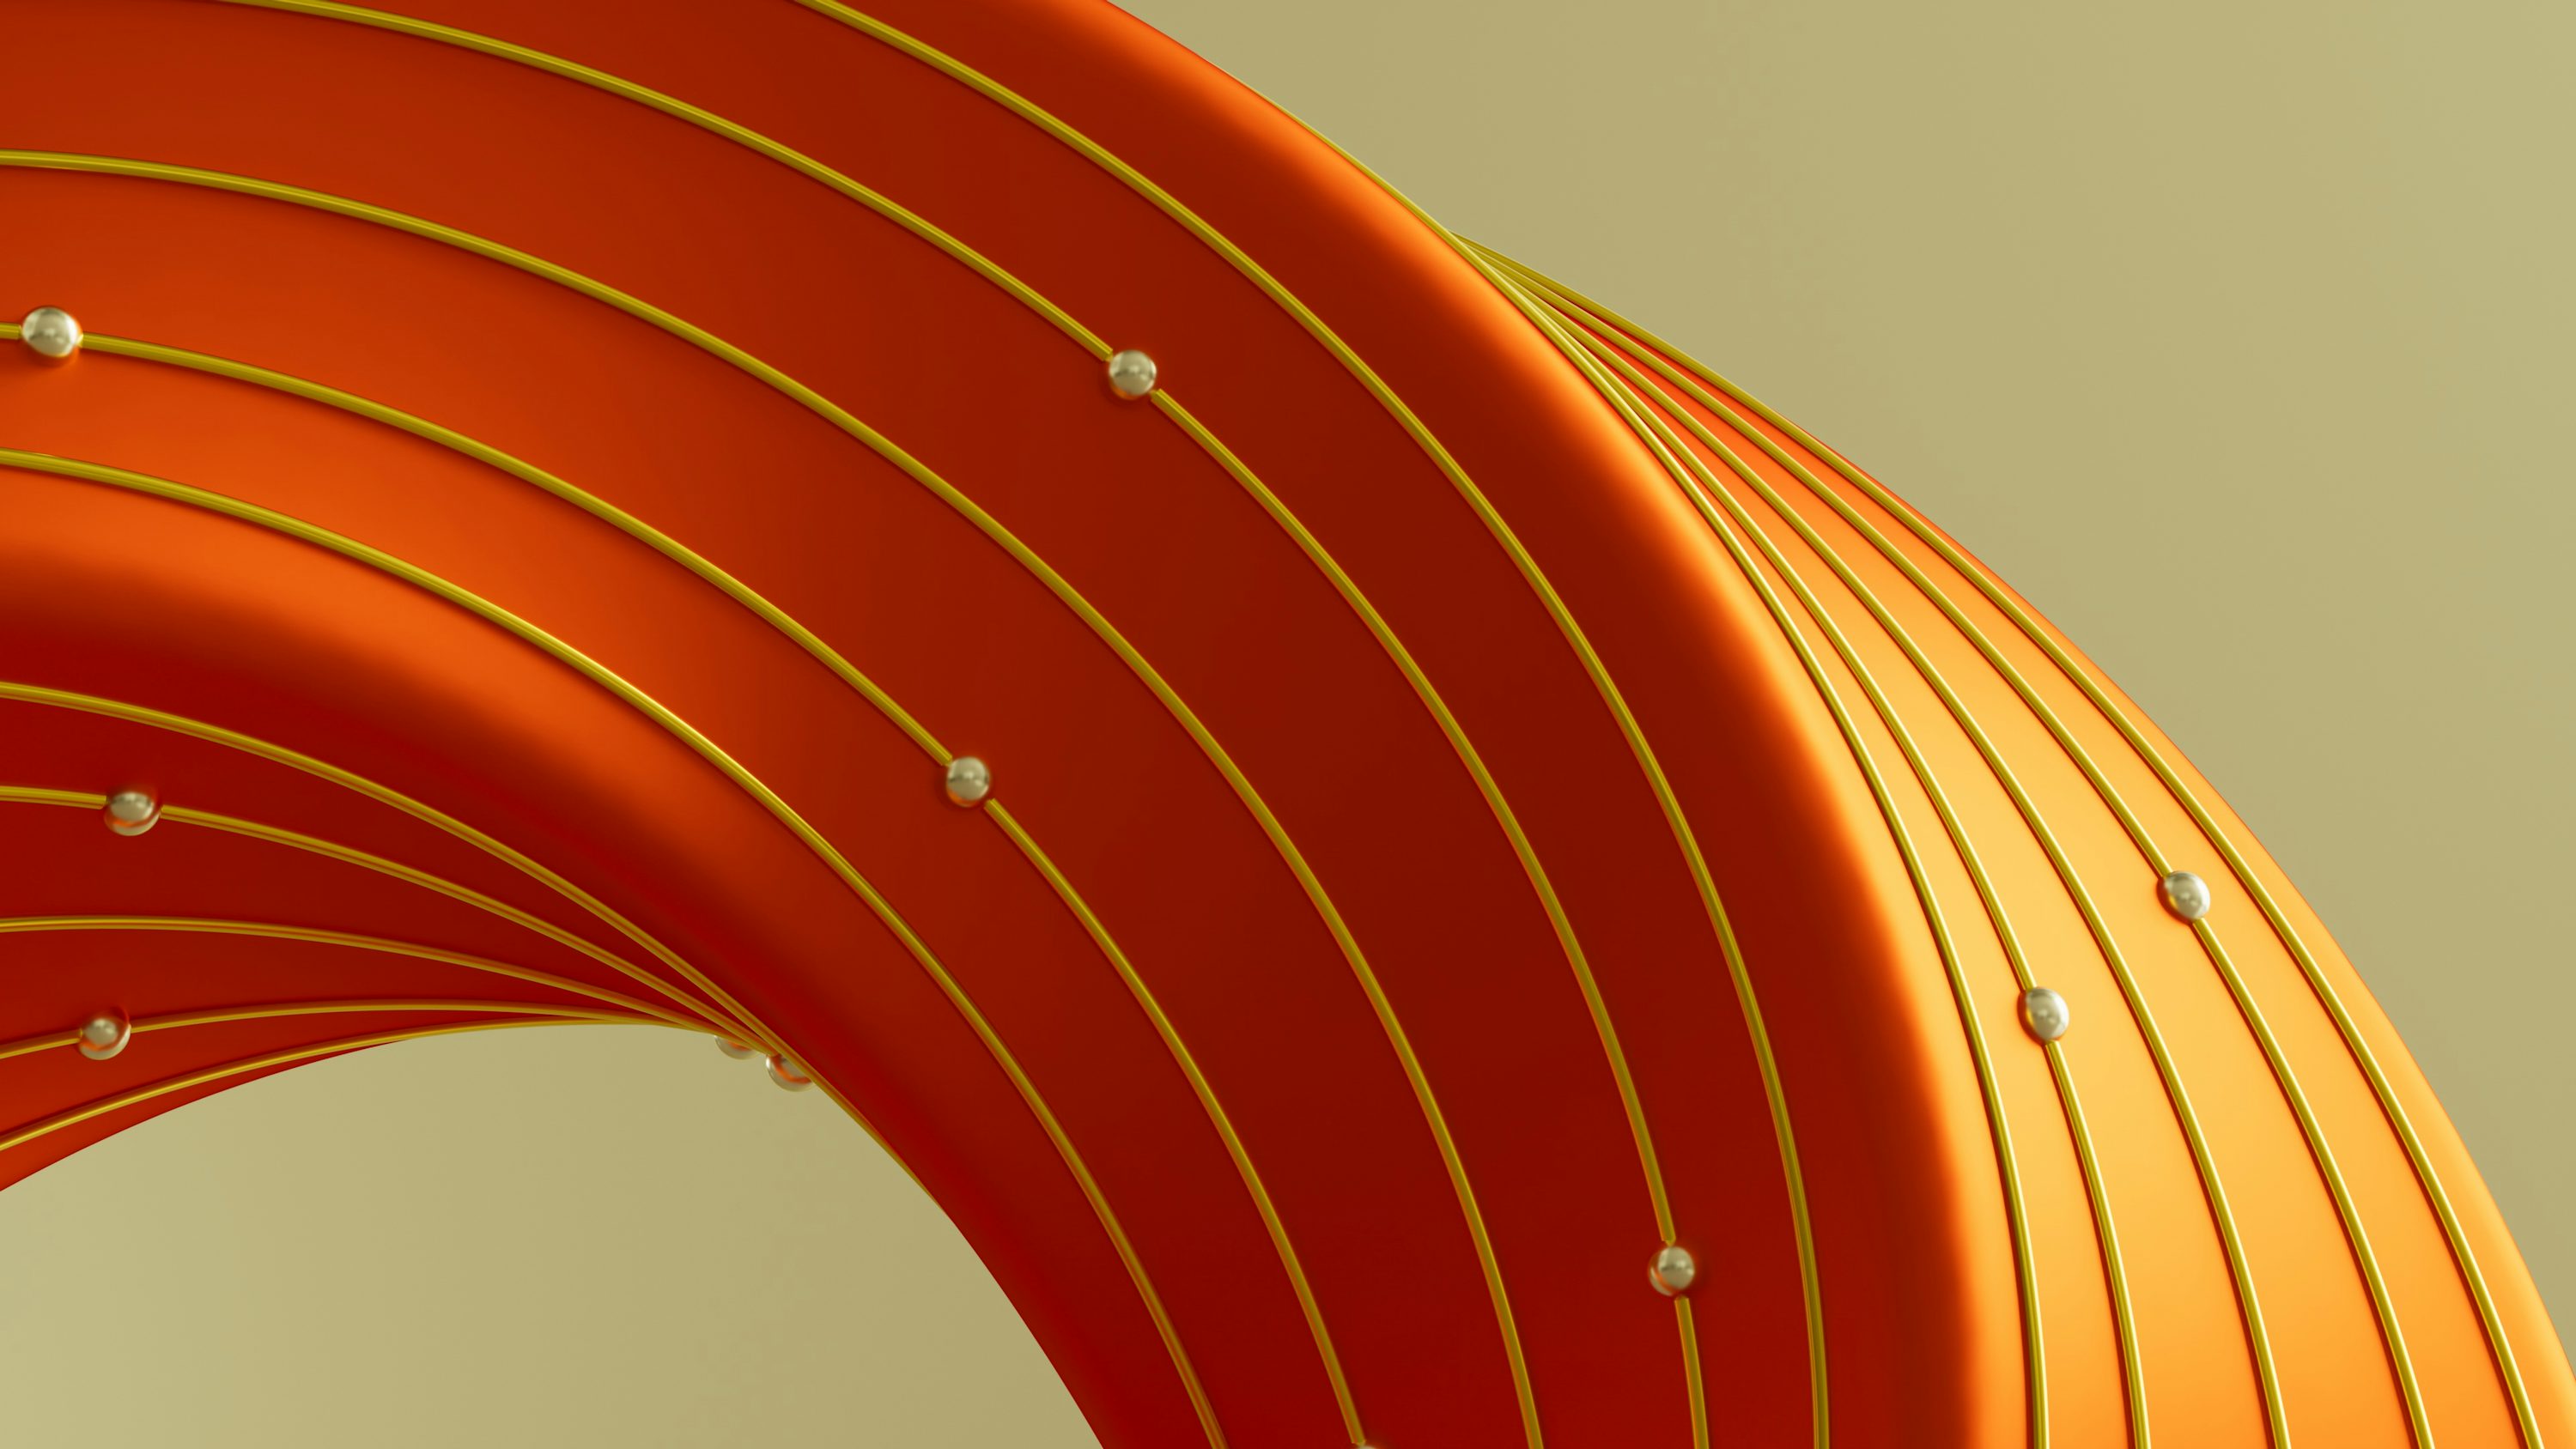 Una imagen abstracta de un objeto naranja curvo